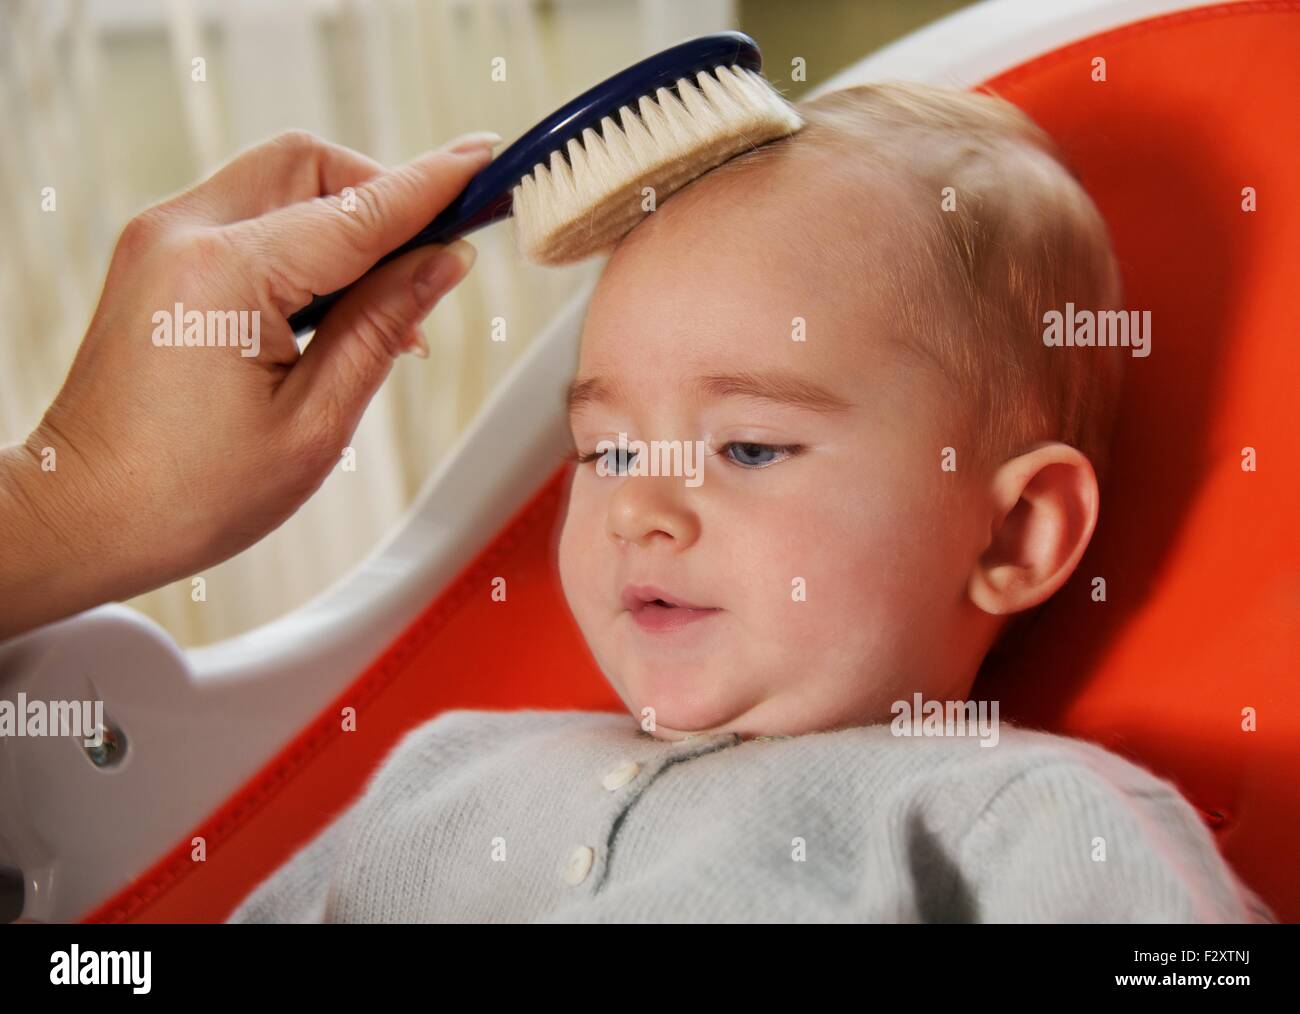 Не причесанный ребенок. Расчесывание дети. Расчесывание волос для детей. Малыш причесывается. Ребенок расчесывает волосы.